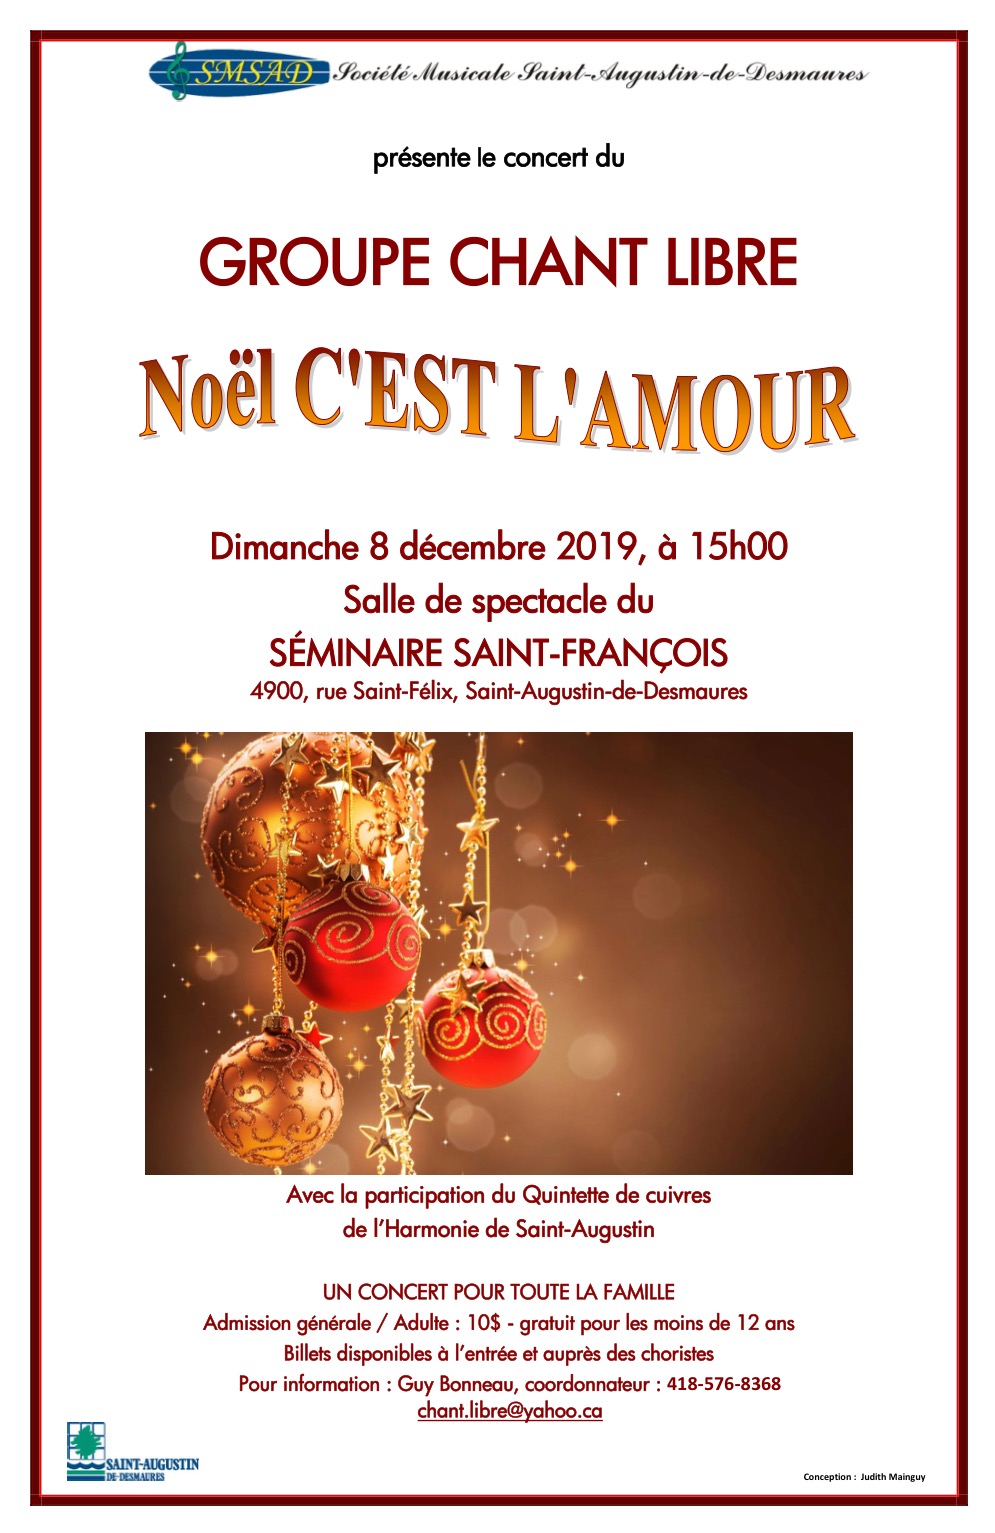 Concert de Noël du Groupe Chant Libre (chorale)